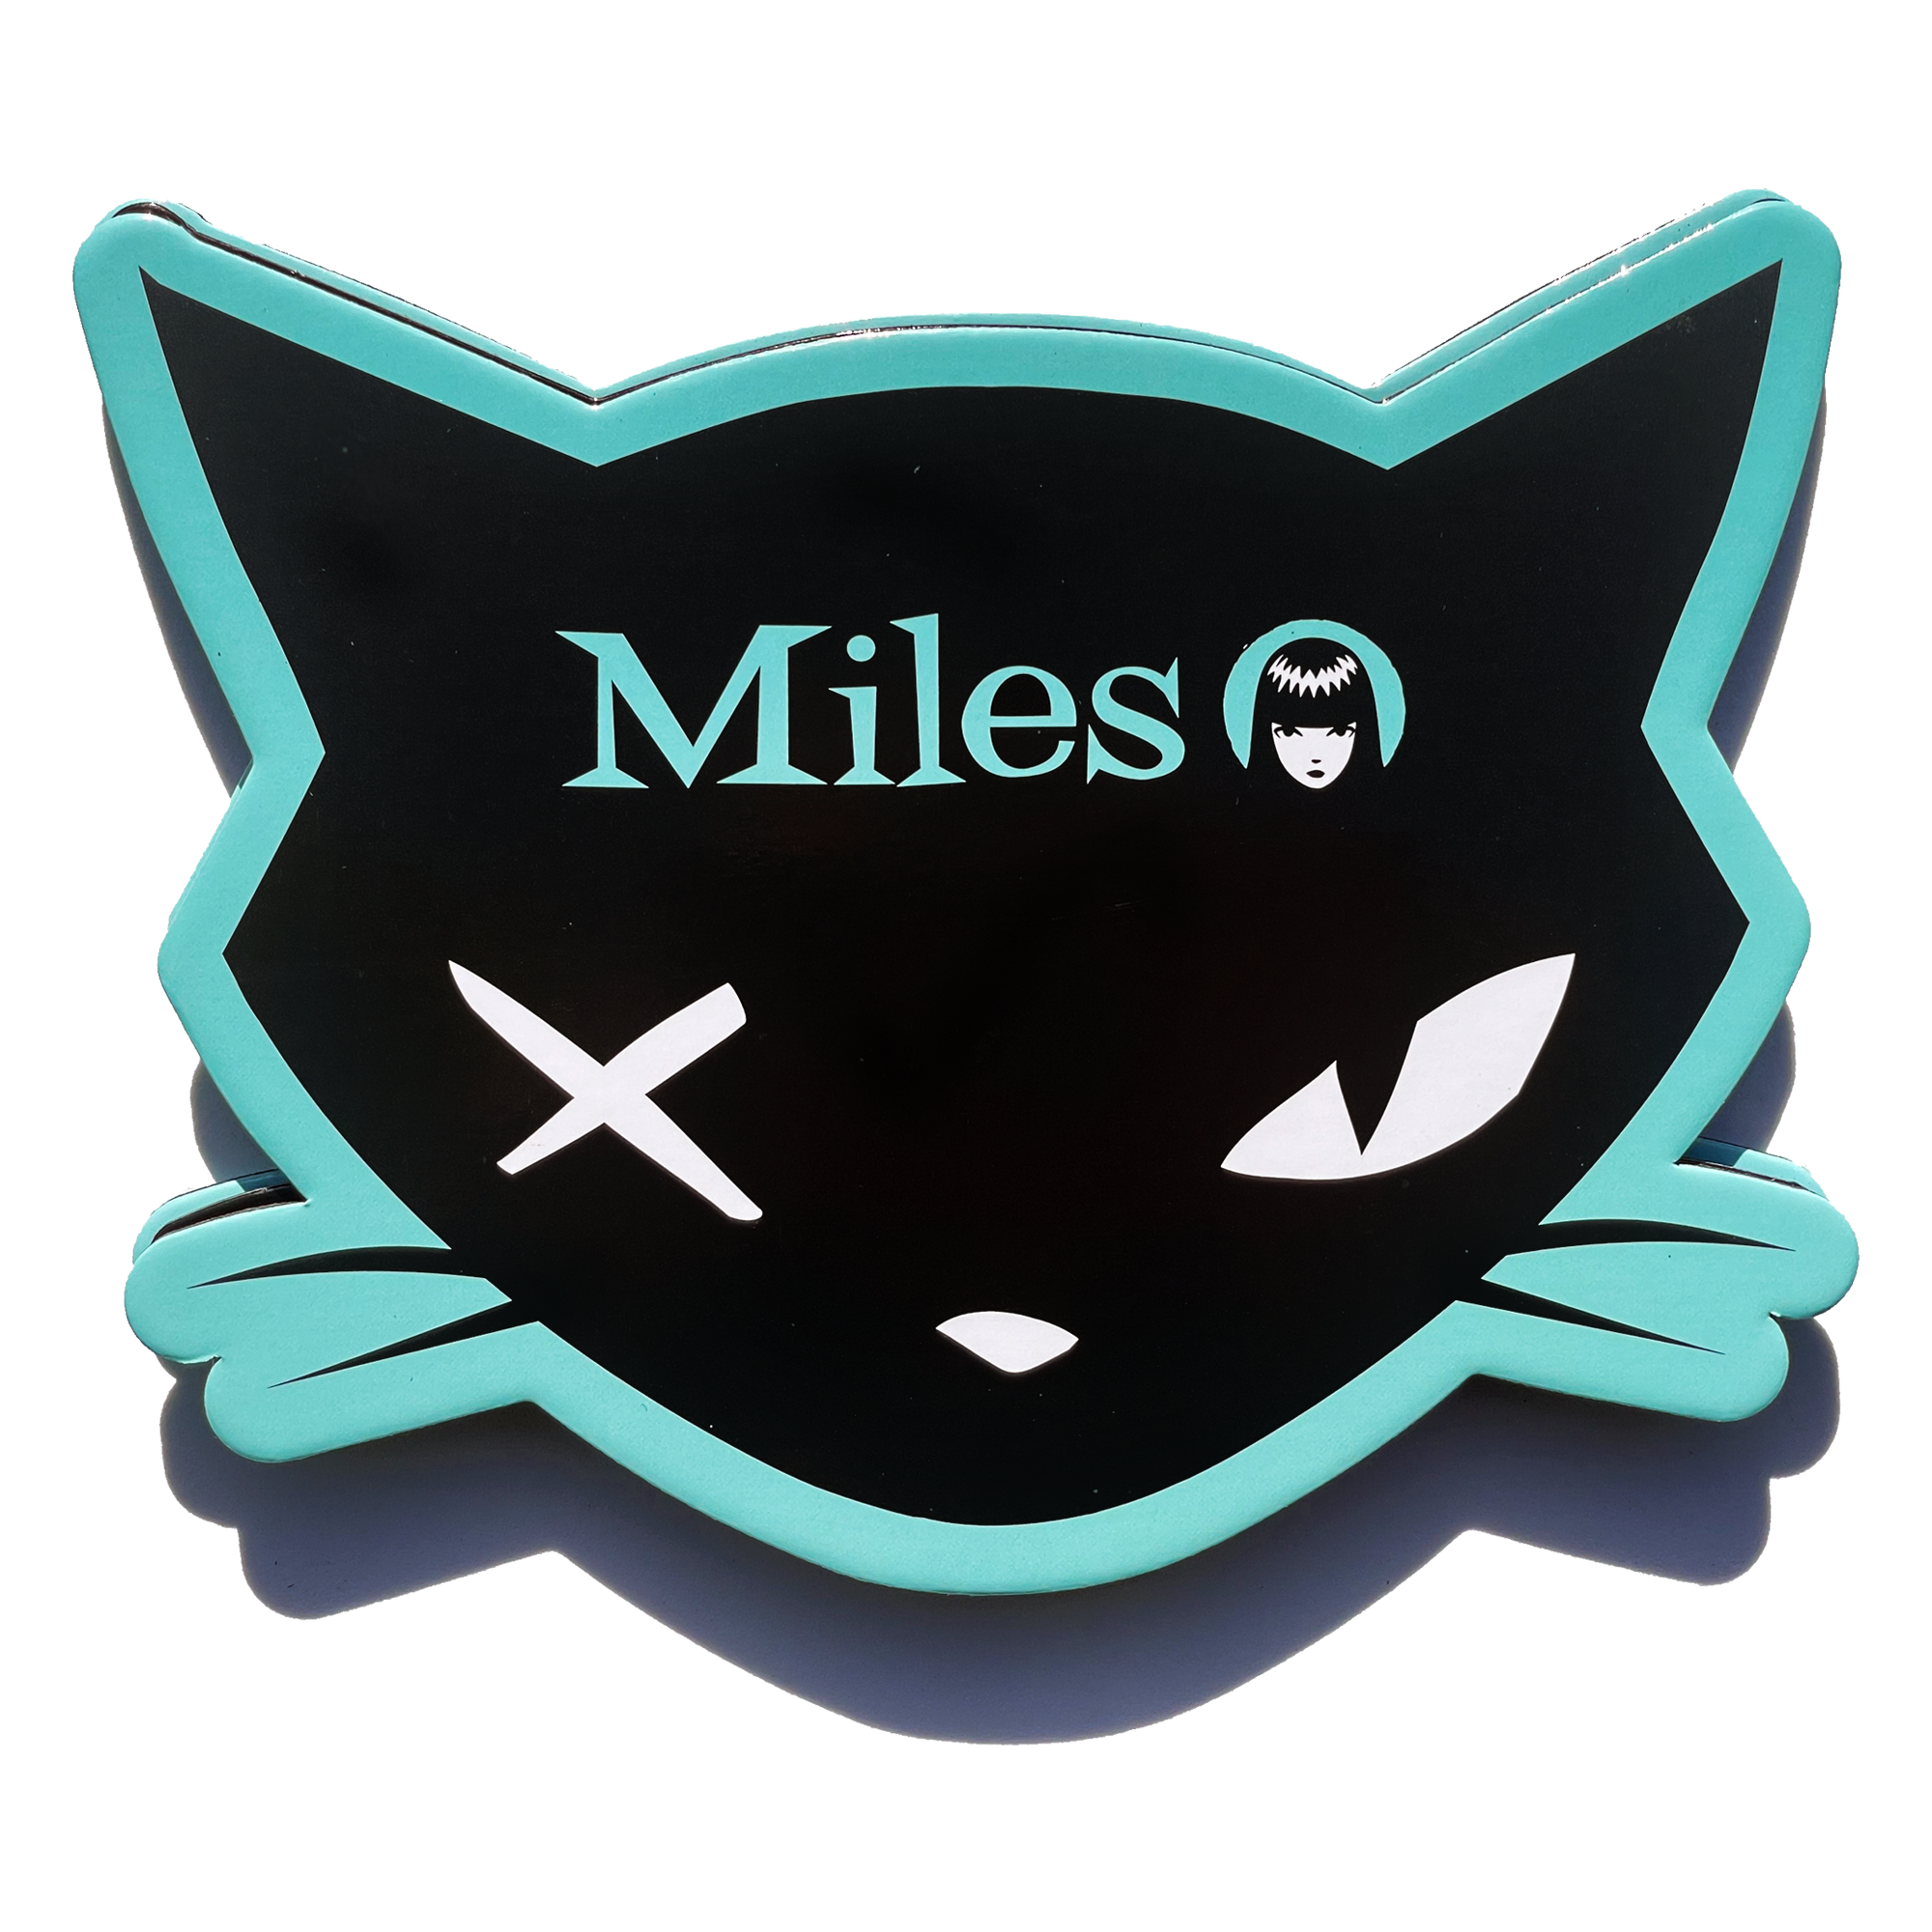 Palette chat Emily l'étrange Miles